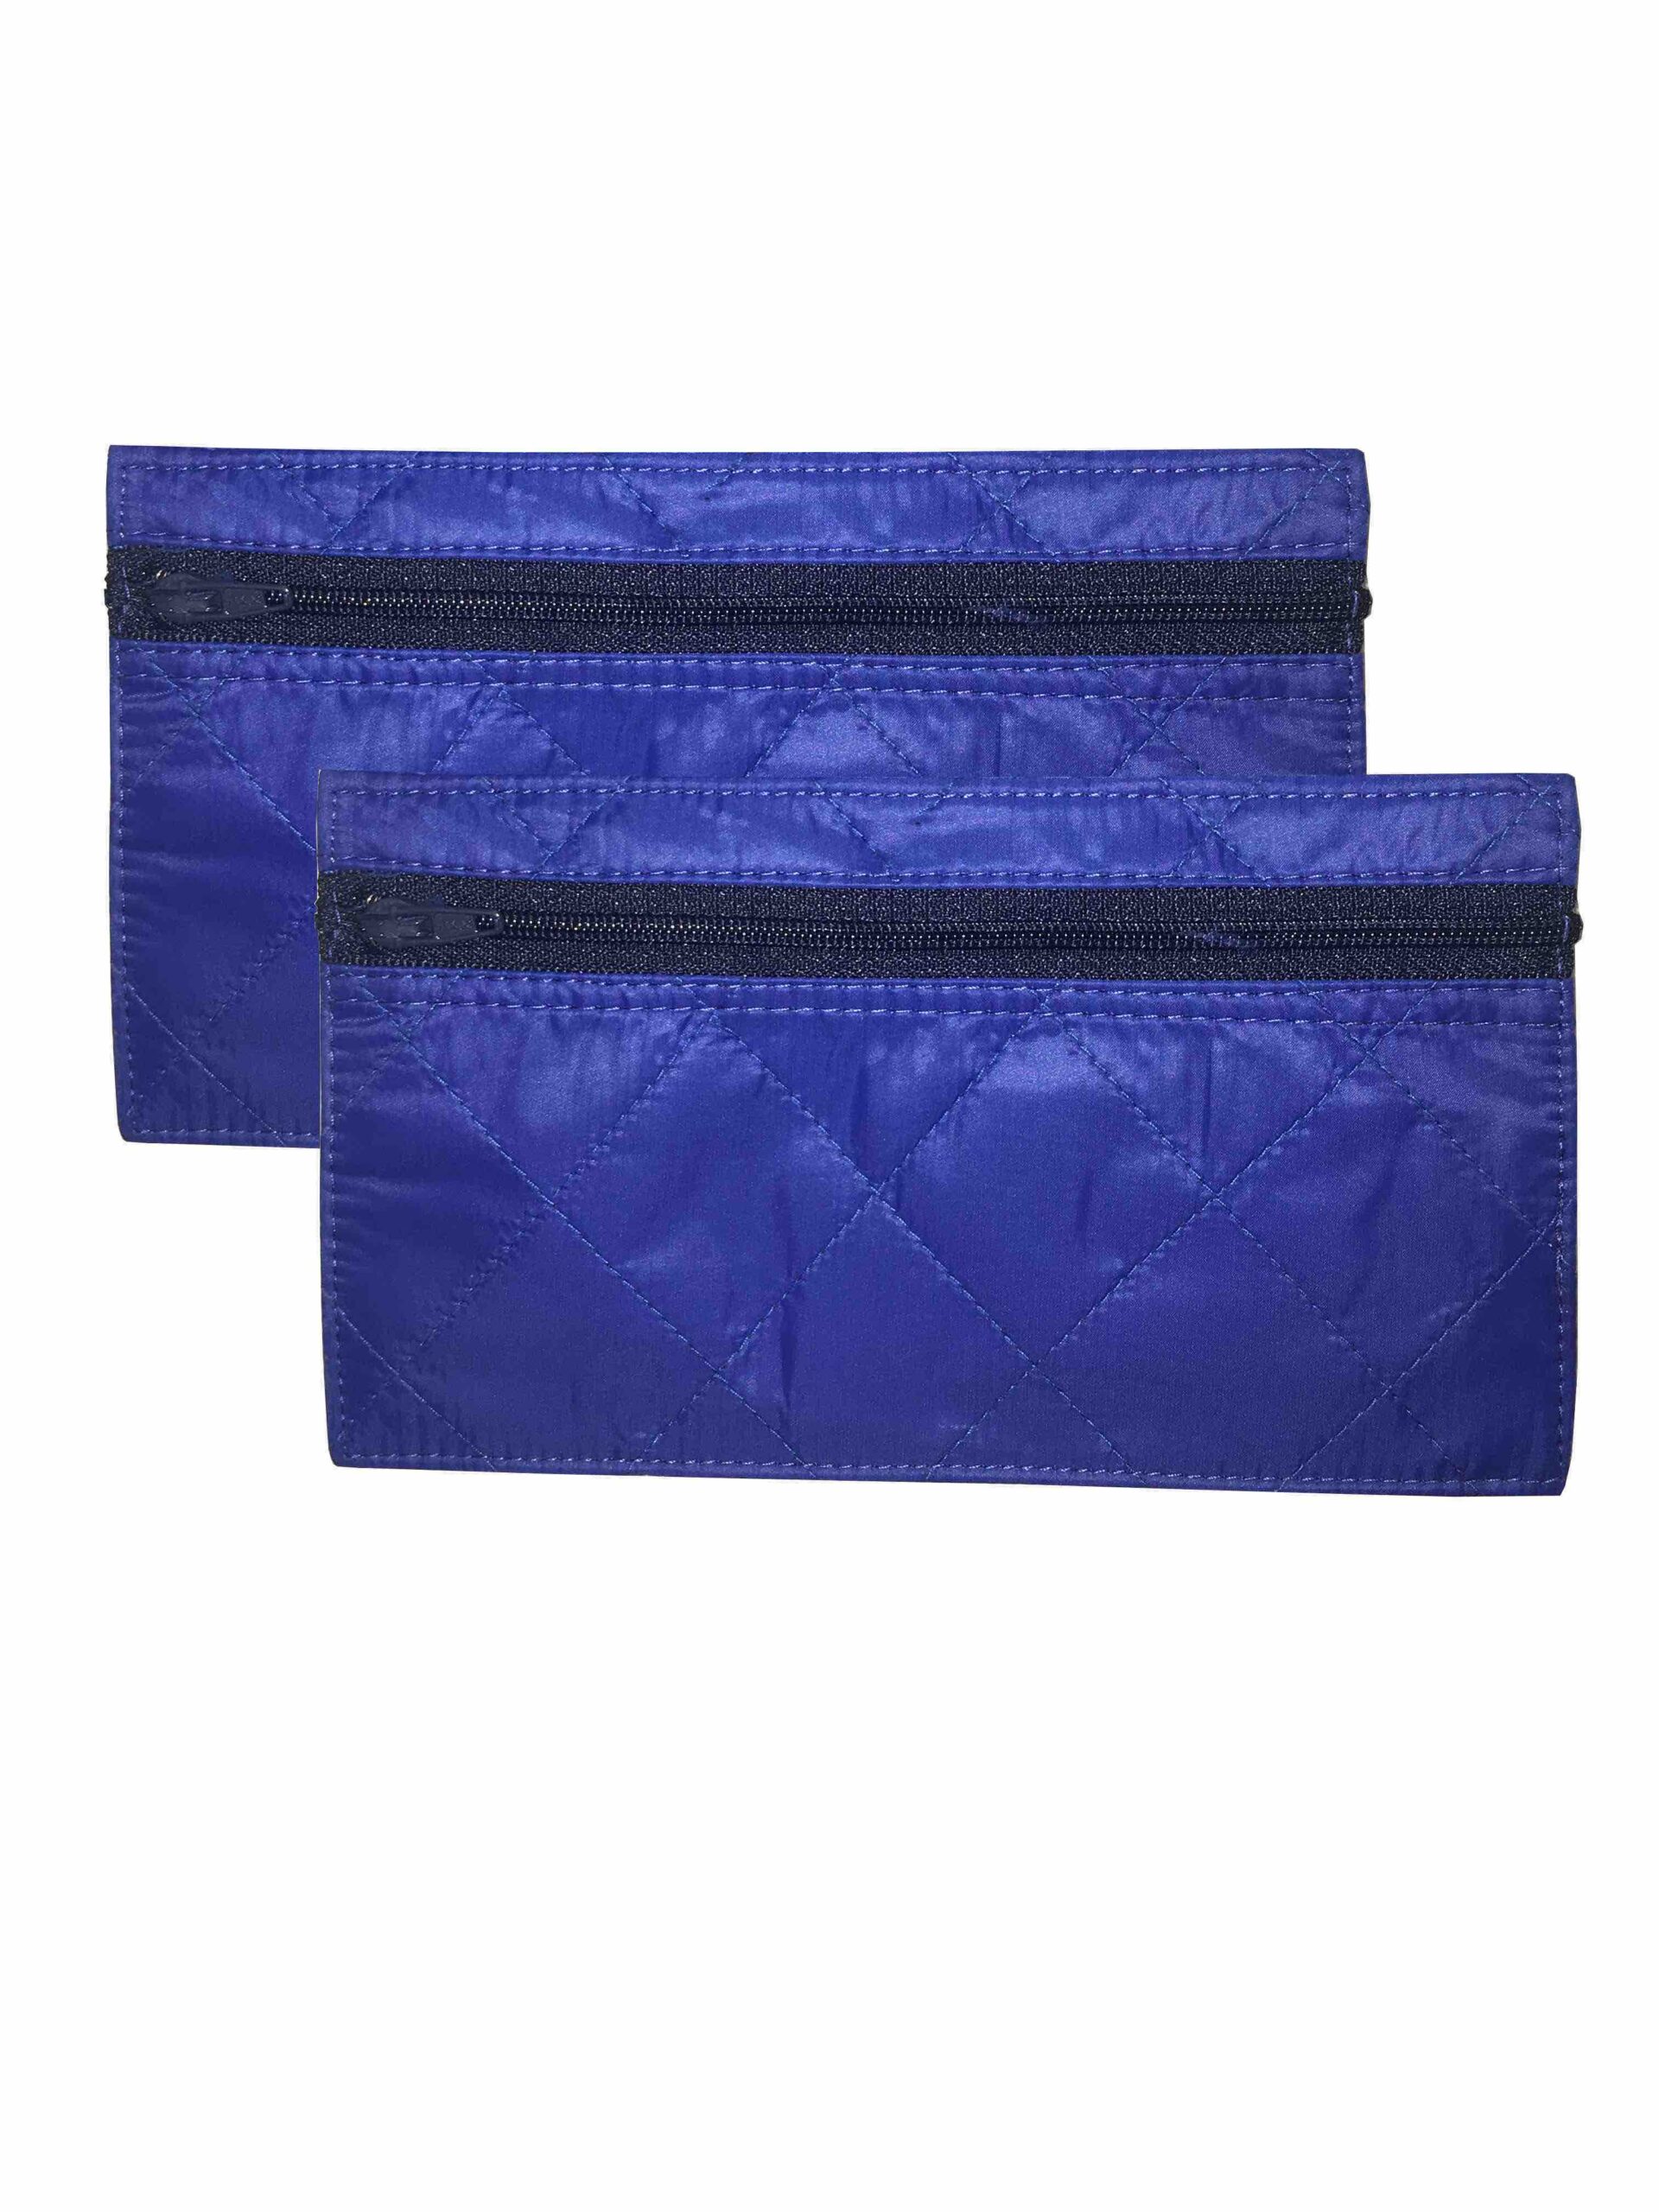 2 Pack Cash Budgeting Envelope System Zippered Wallet Dark Blue